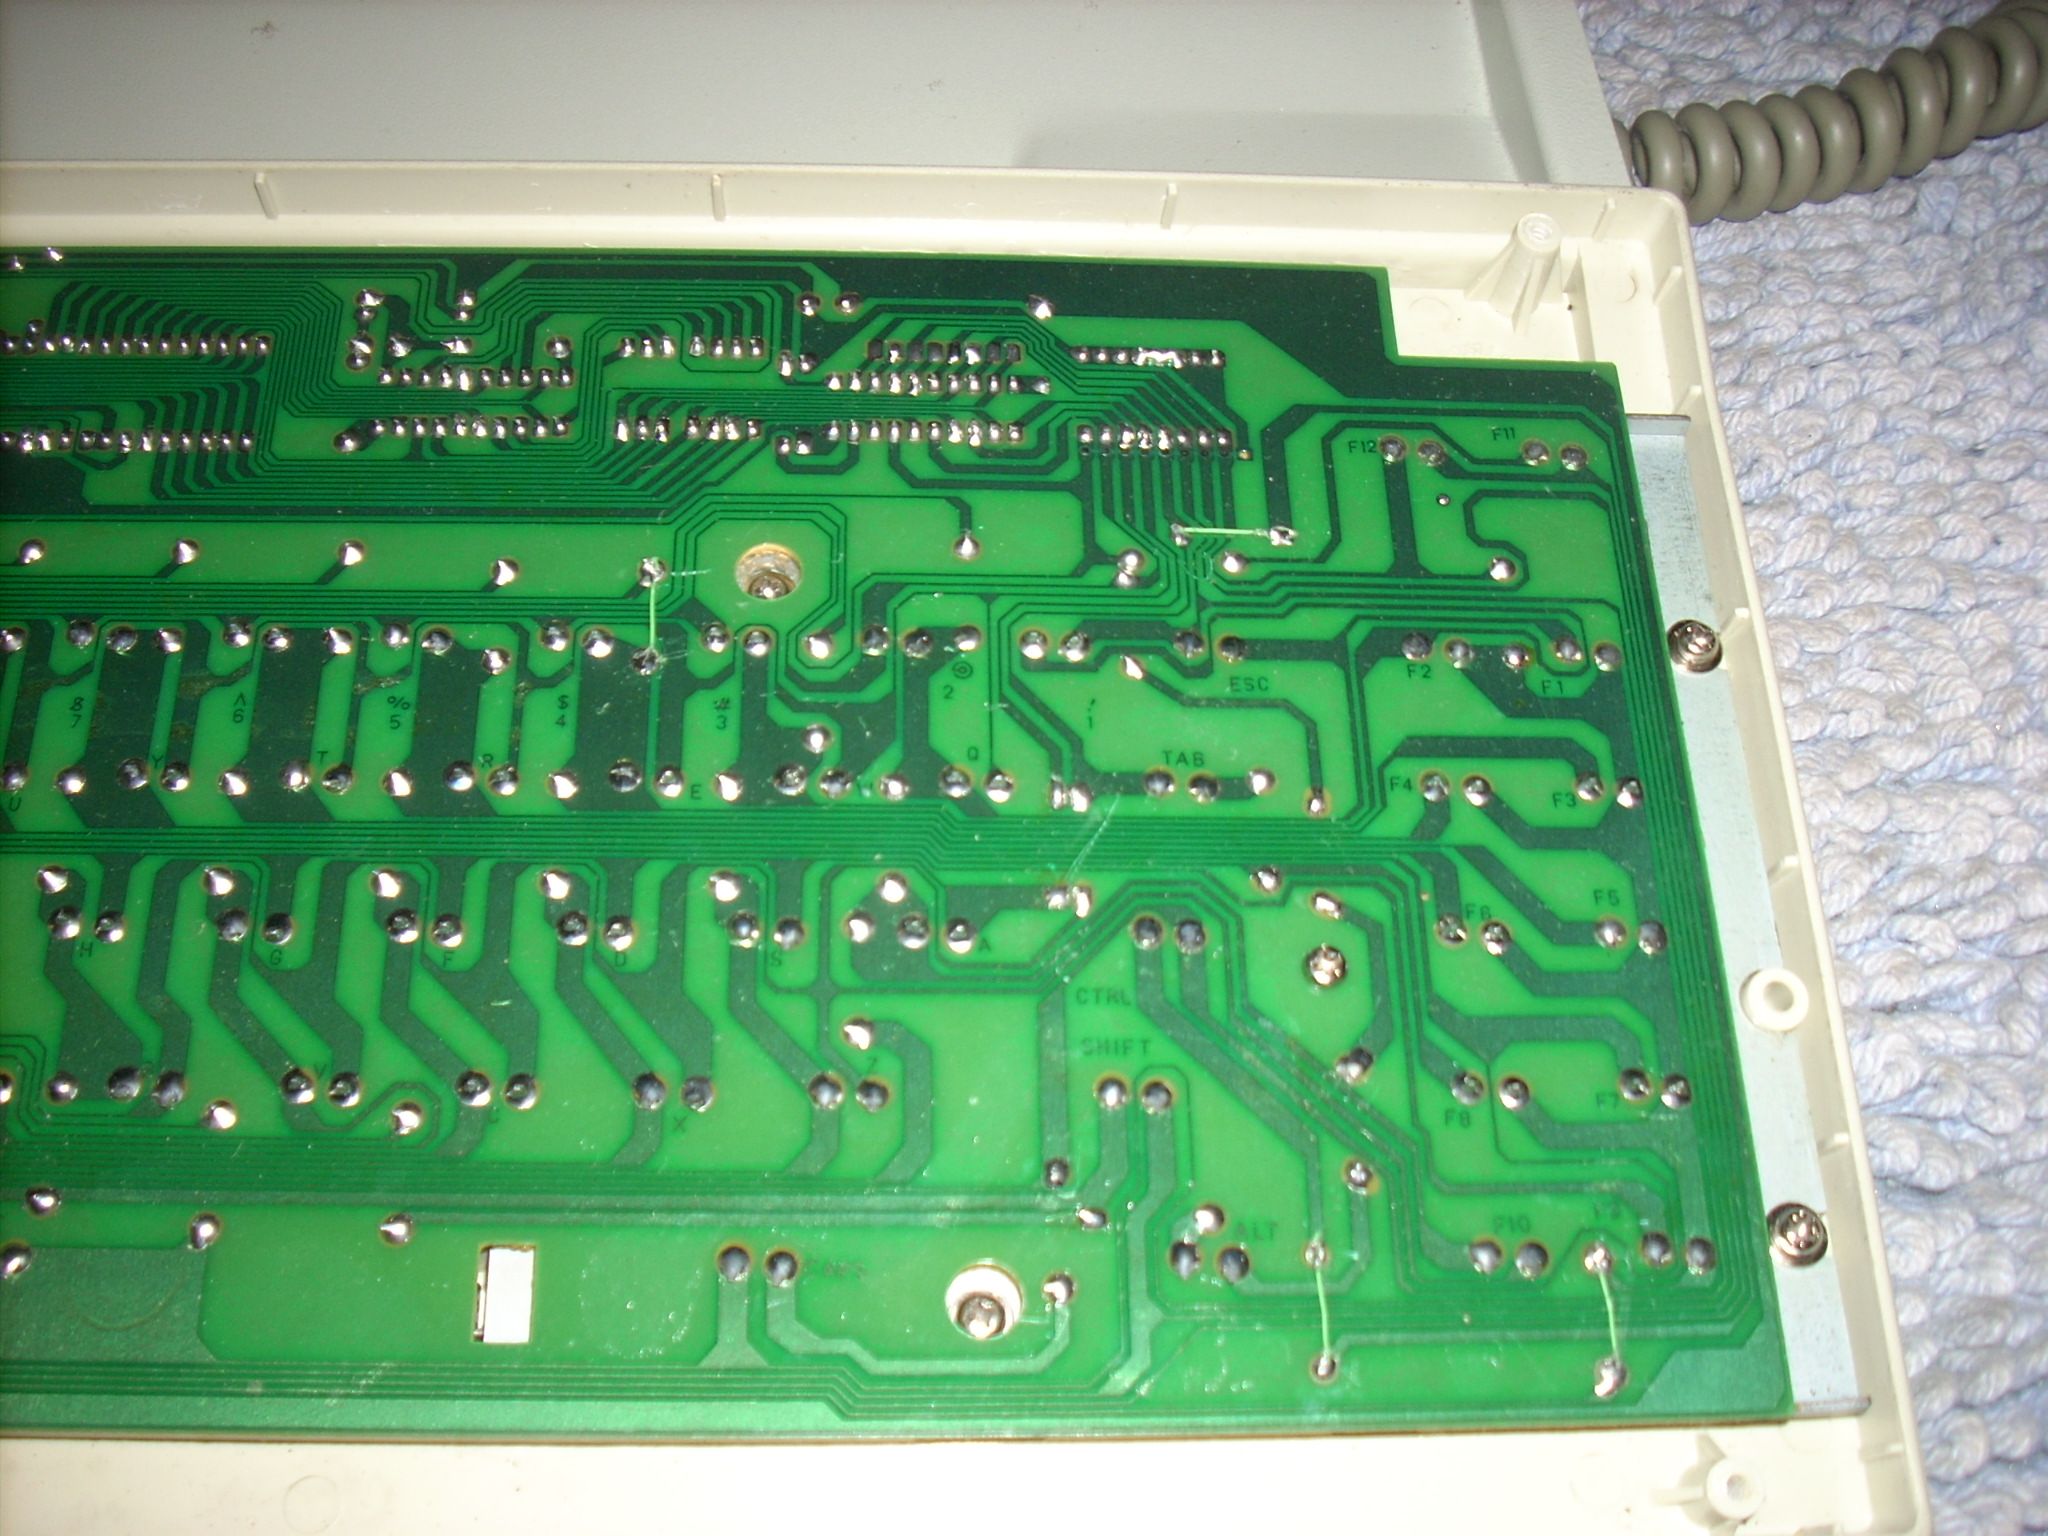 Gen1 PC board, left side detail.